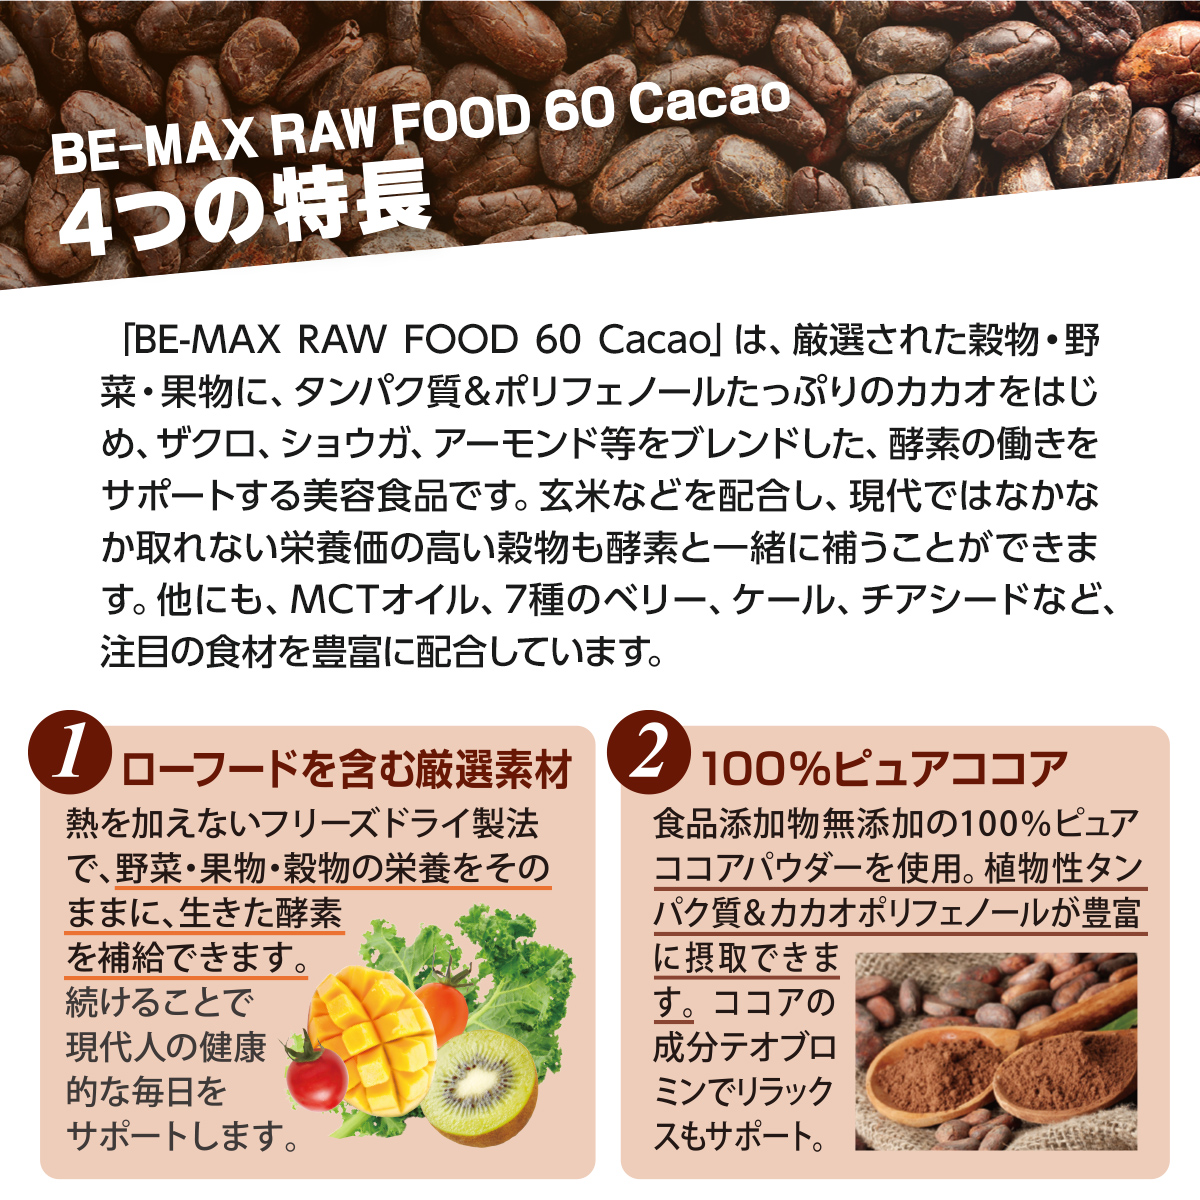 人気ブランドの BE-MAX RAW FOOD 60 Cacao ローフード カカオ ビーマックス ローフード60 40g×15包 ダイエット  美容補助食品 酵素 ダイエットサポート食品 RAWFOOD60 CACAO ローフード60カカオ